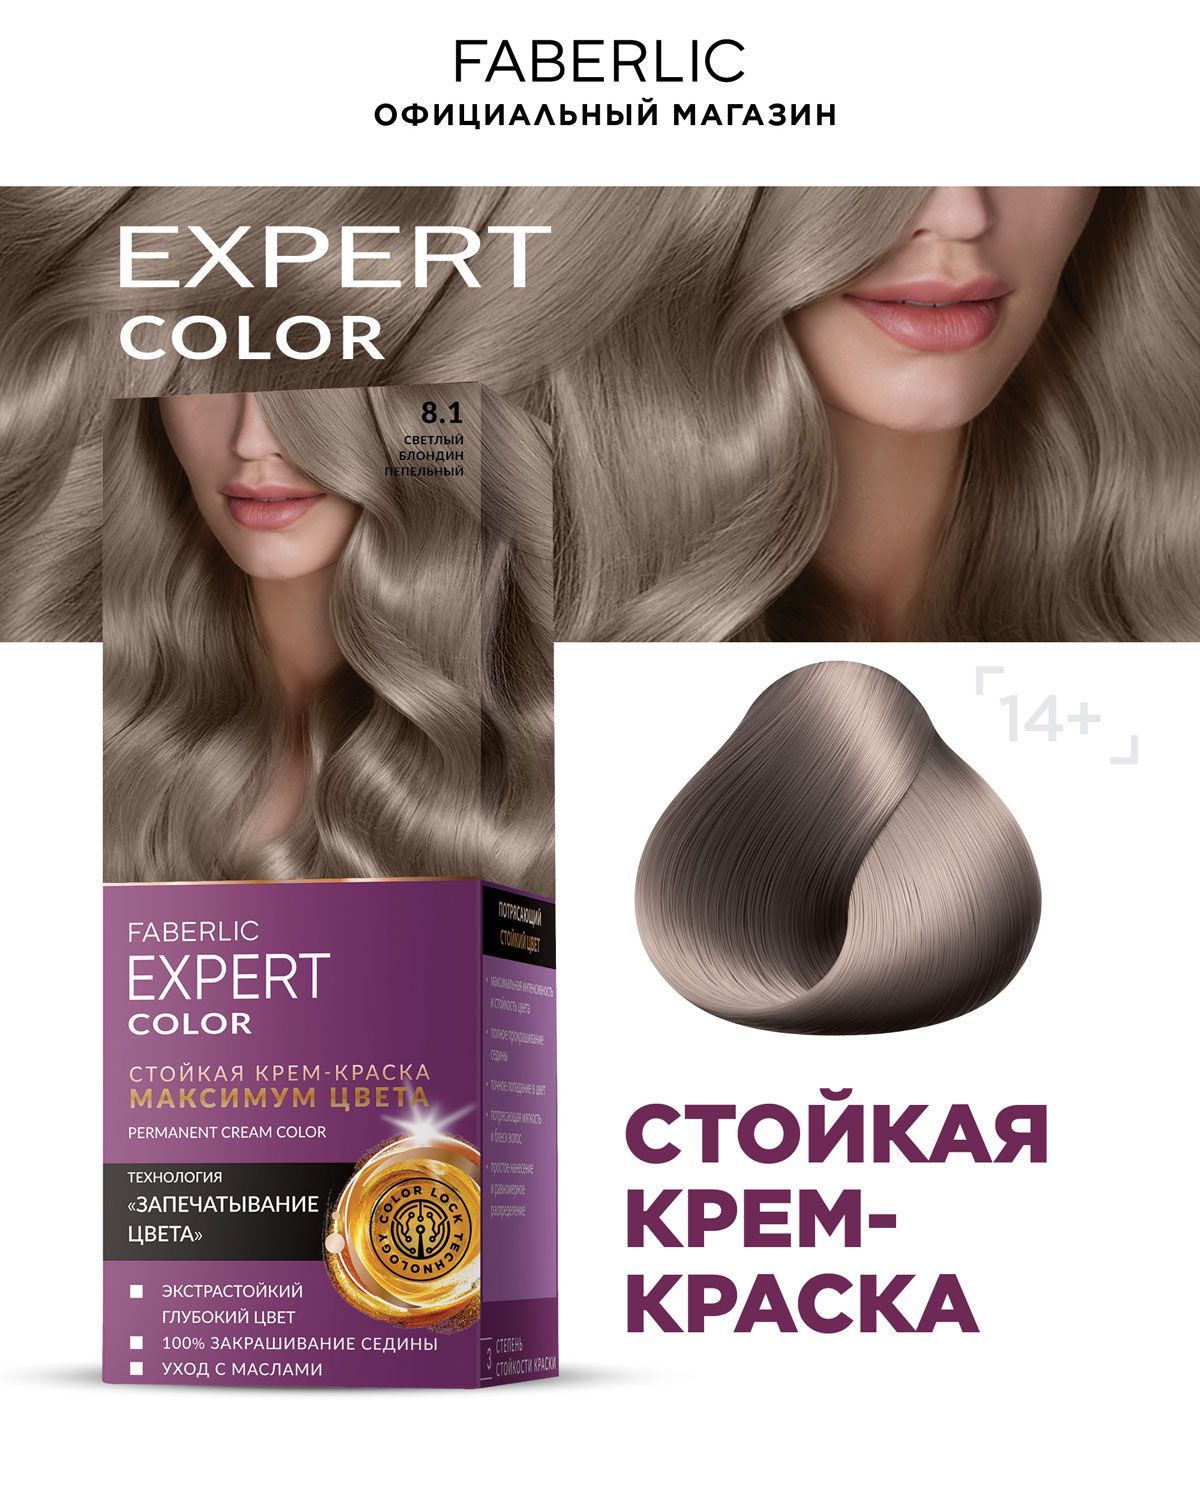 Краска эксперт фаберлик отзывы. Фаберлик эксперт краска для волос. Эксперт колор краска для волос. Краска для волос Фаберлик эксперт колор. Краска для волос Expert Color Фаберлик 7.1.